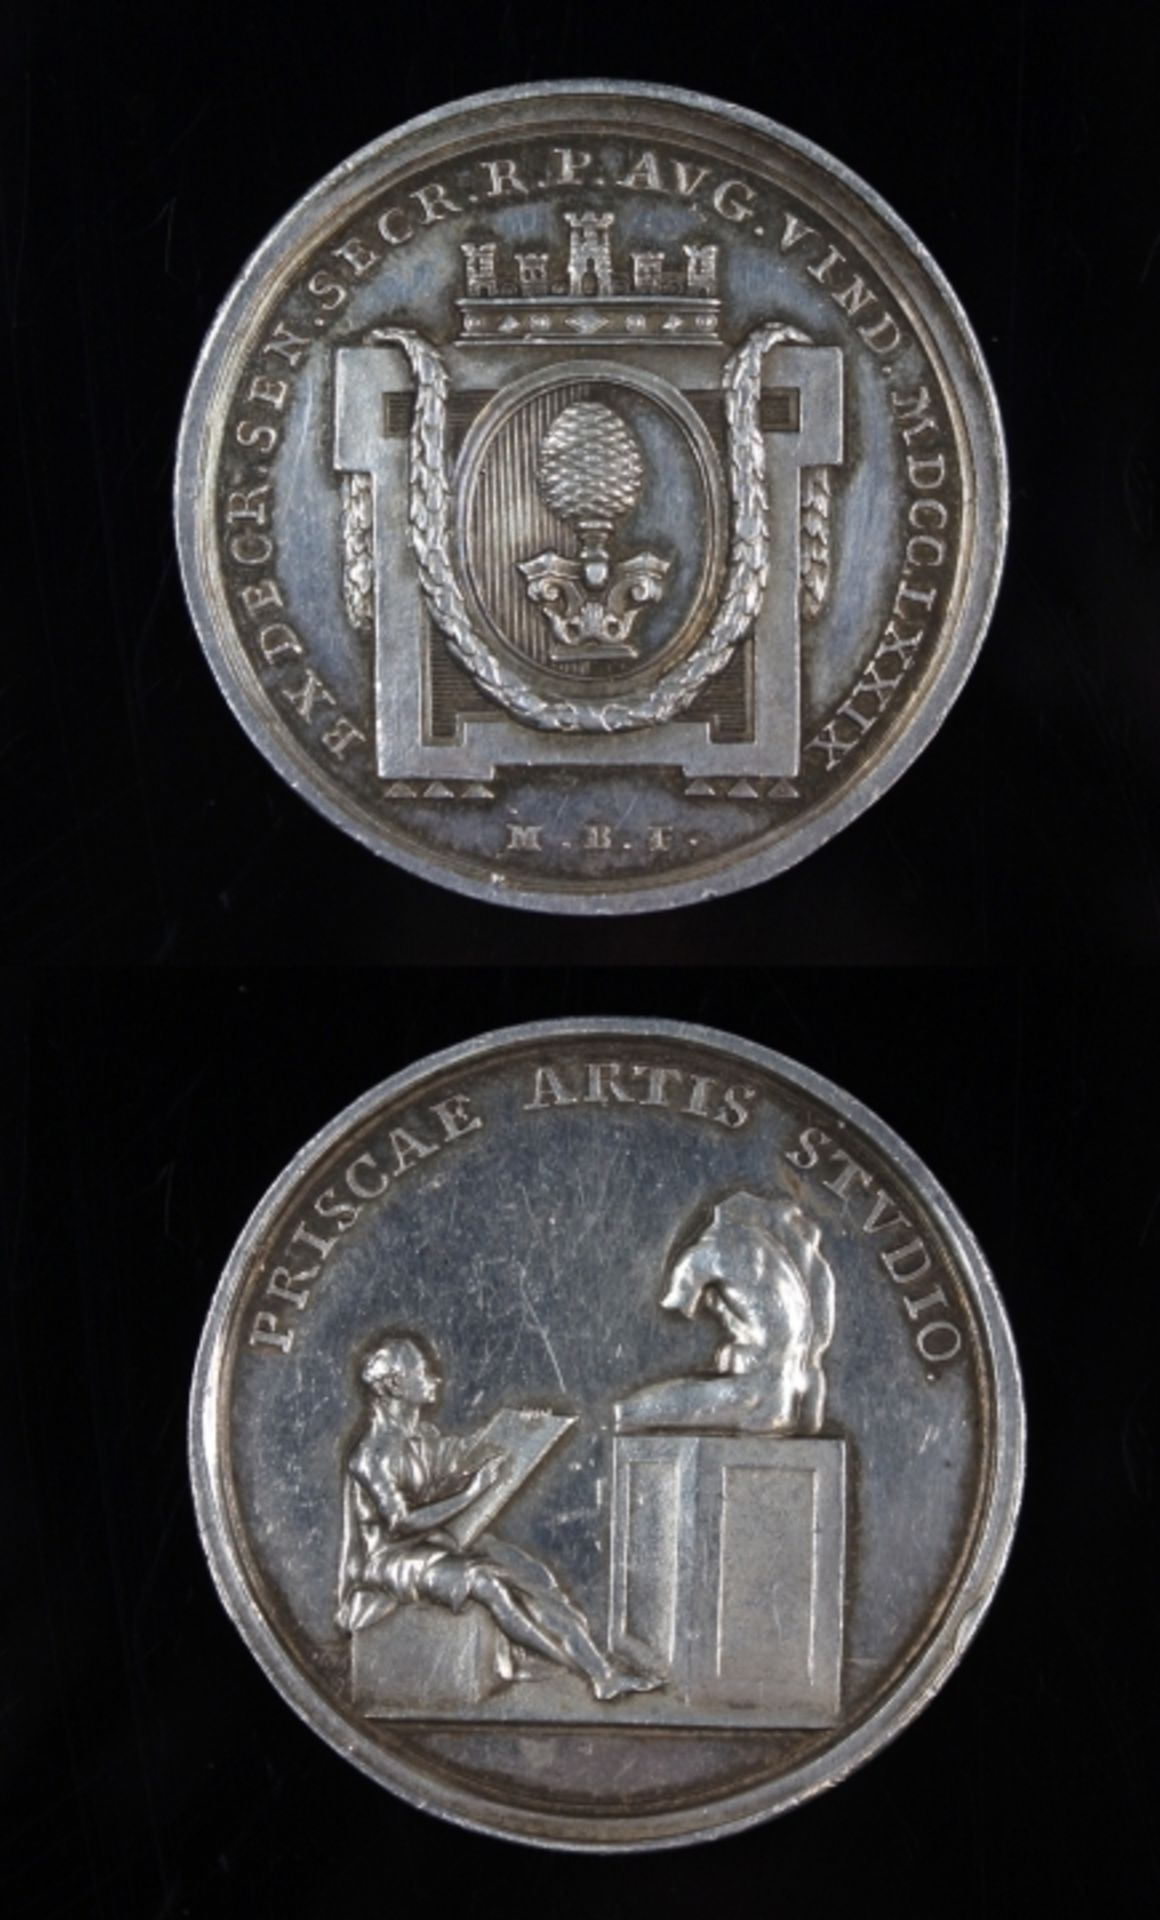 Augsburger Preismedaille zu den Prämien der Akademie 1779, Vs: Augsburger Wappen mit Stadtsilhouette